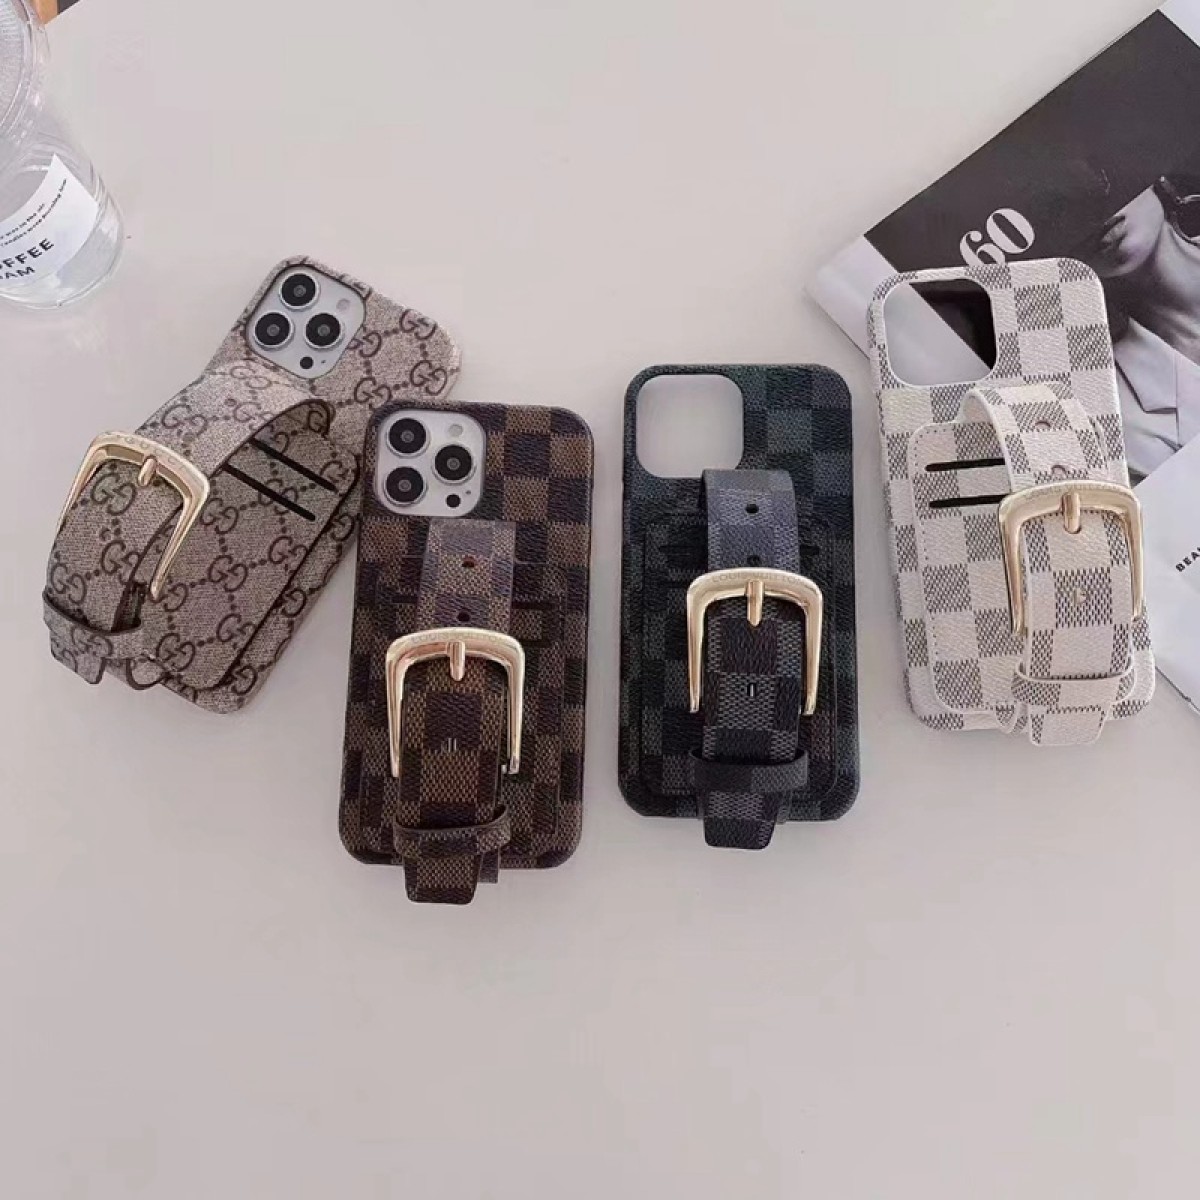 Iphone 13 Pro Max Case Designer Louis Vuitton - Luxury Case Iphone